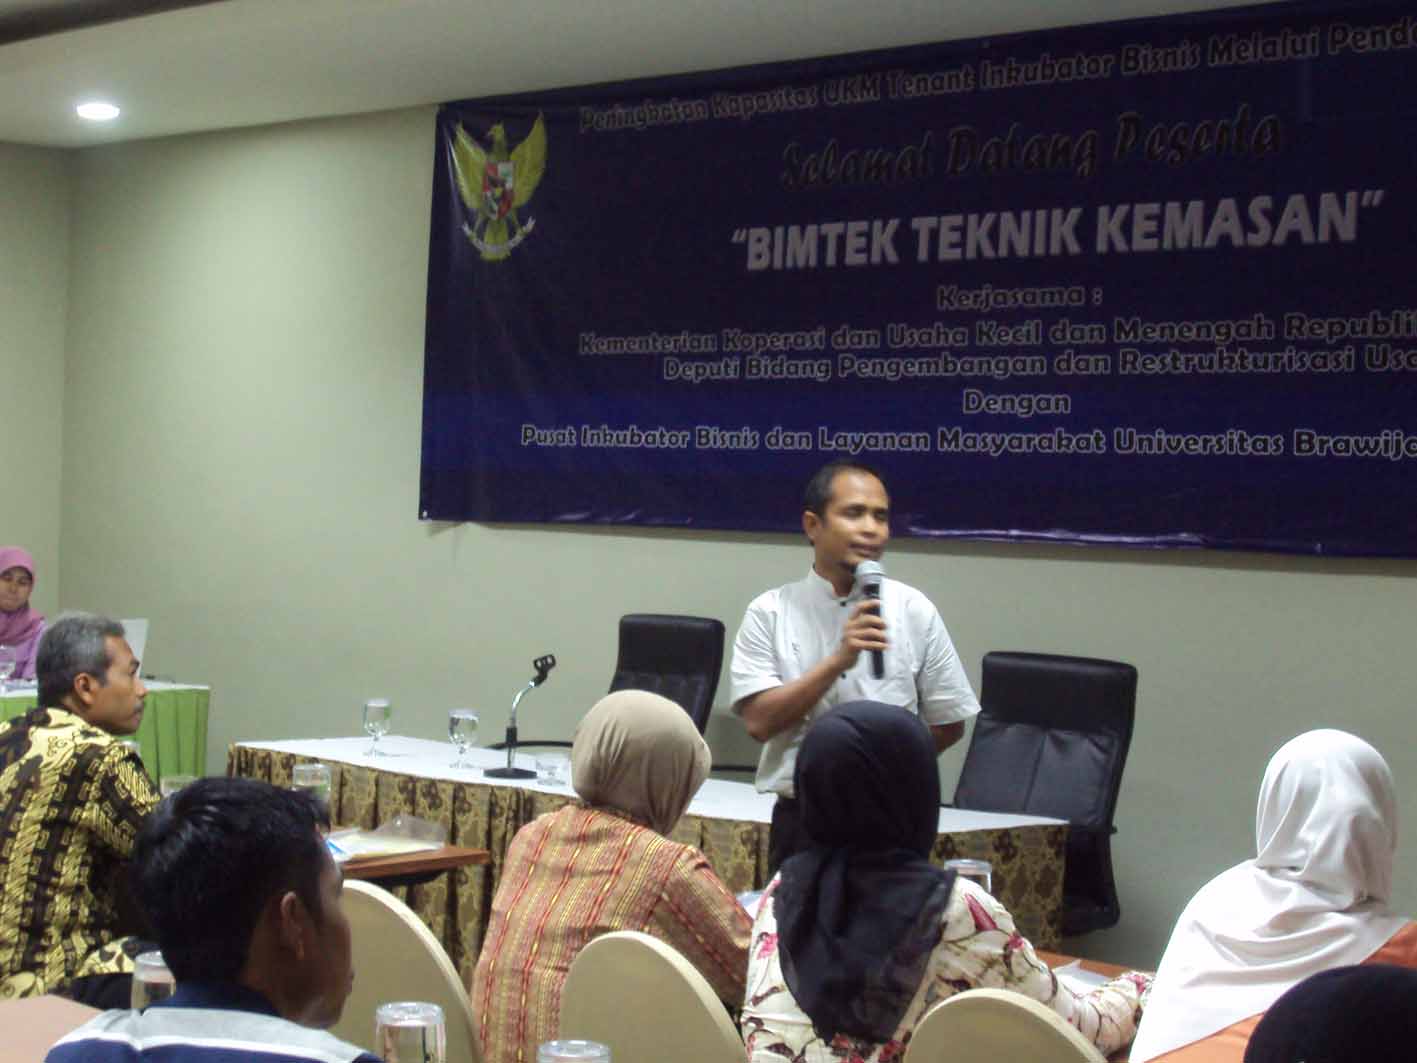 UMKM, Piblam UB, Dinas Koperasi Propinsi Jawa Timur dan Kemenkop UKM 